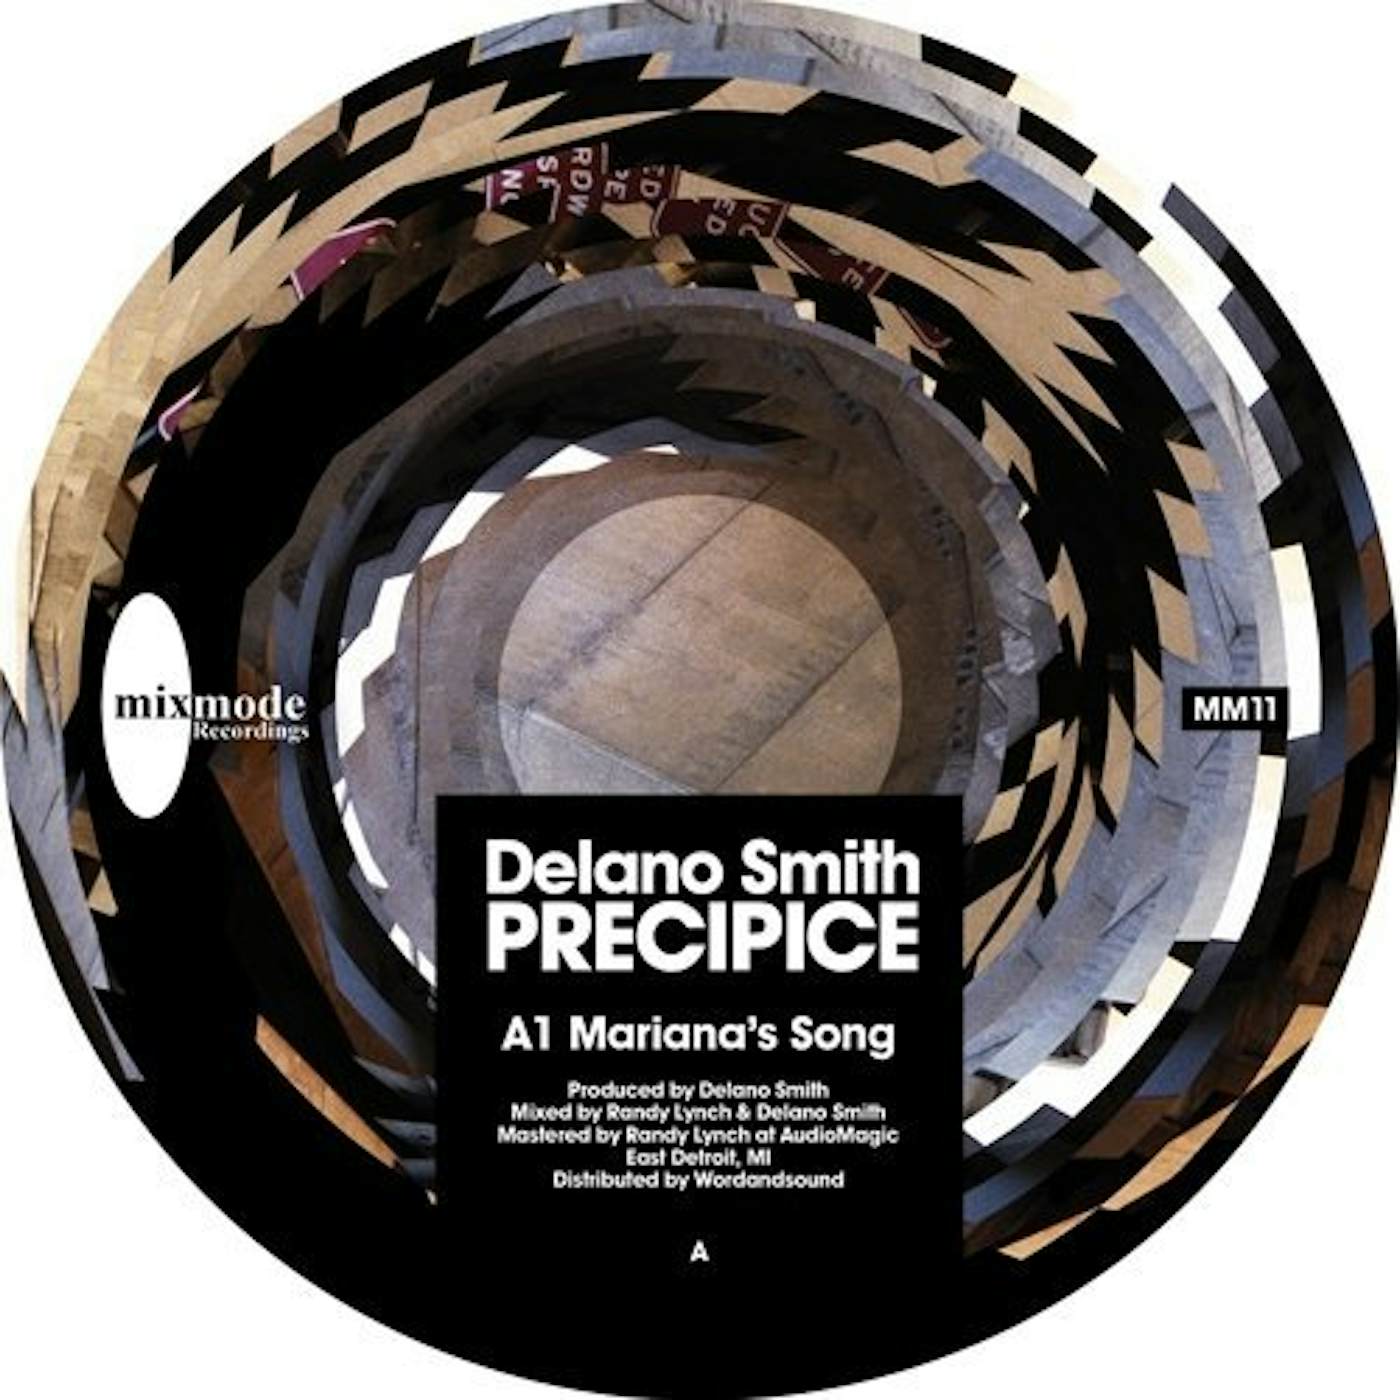 Delano Smith PRECIPICE Vinyl Record